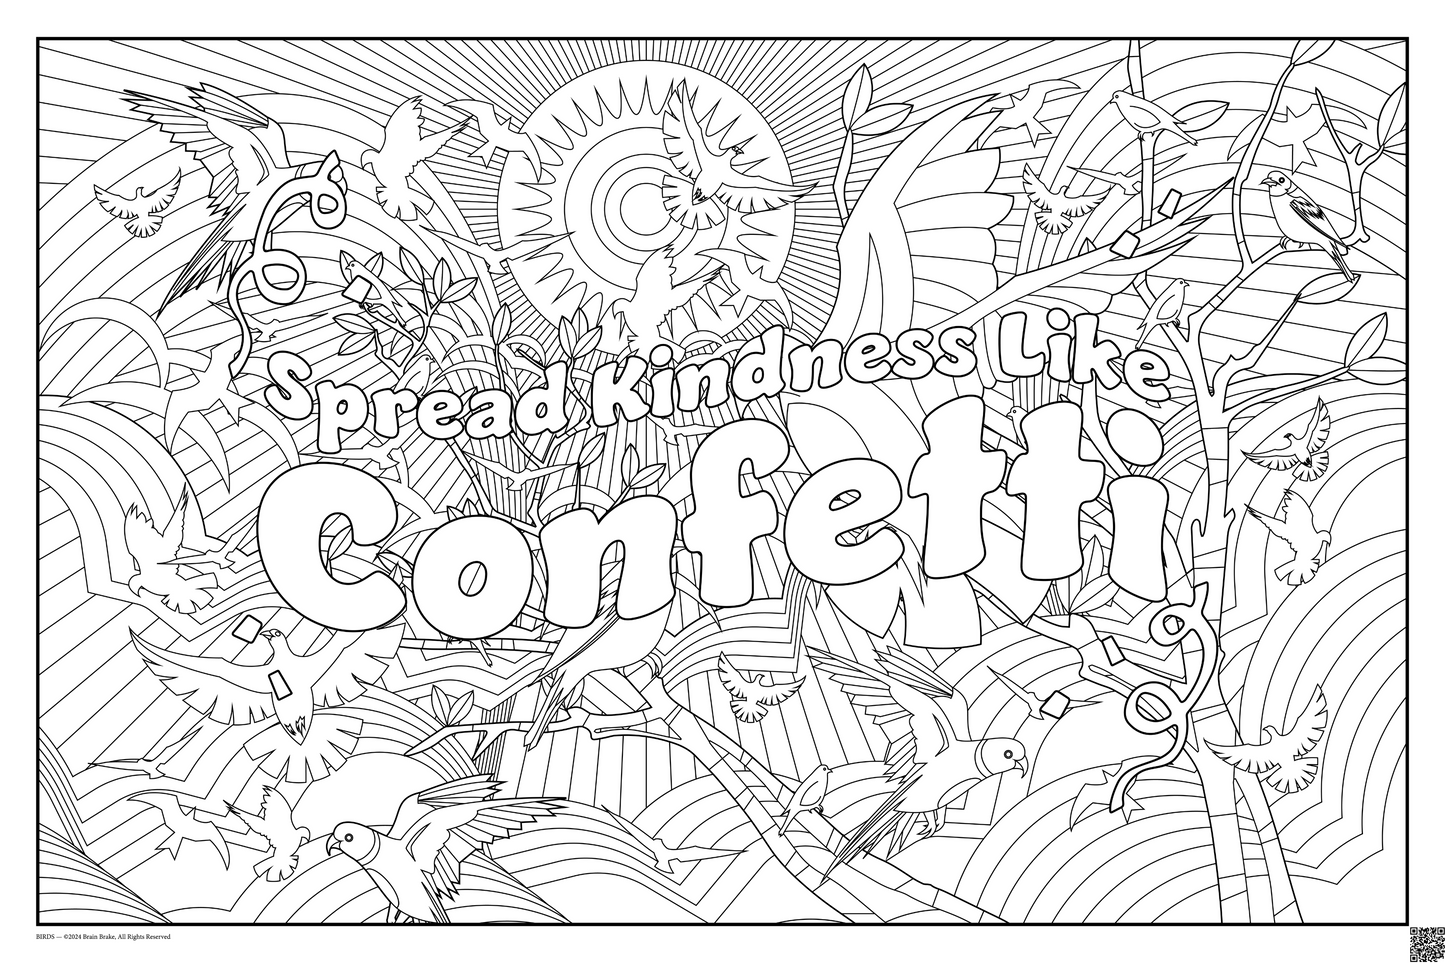 Build Community: Spread Kindness Like Confetti